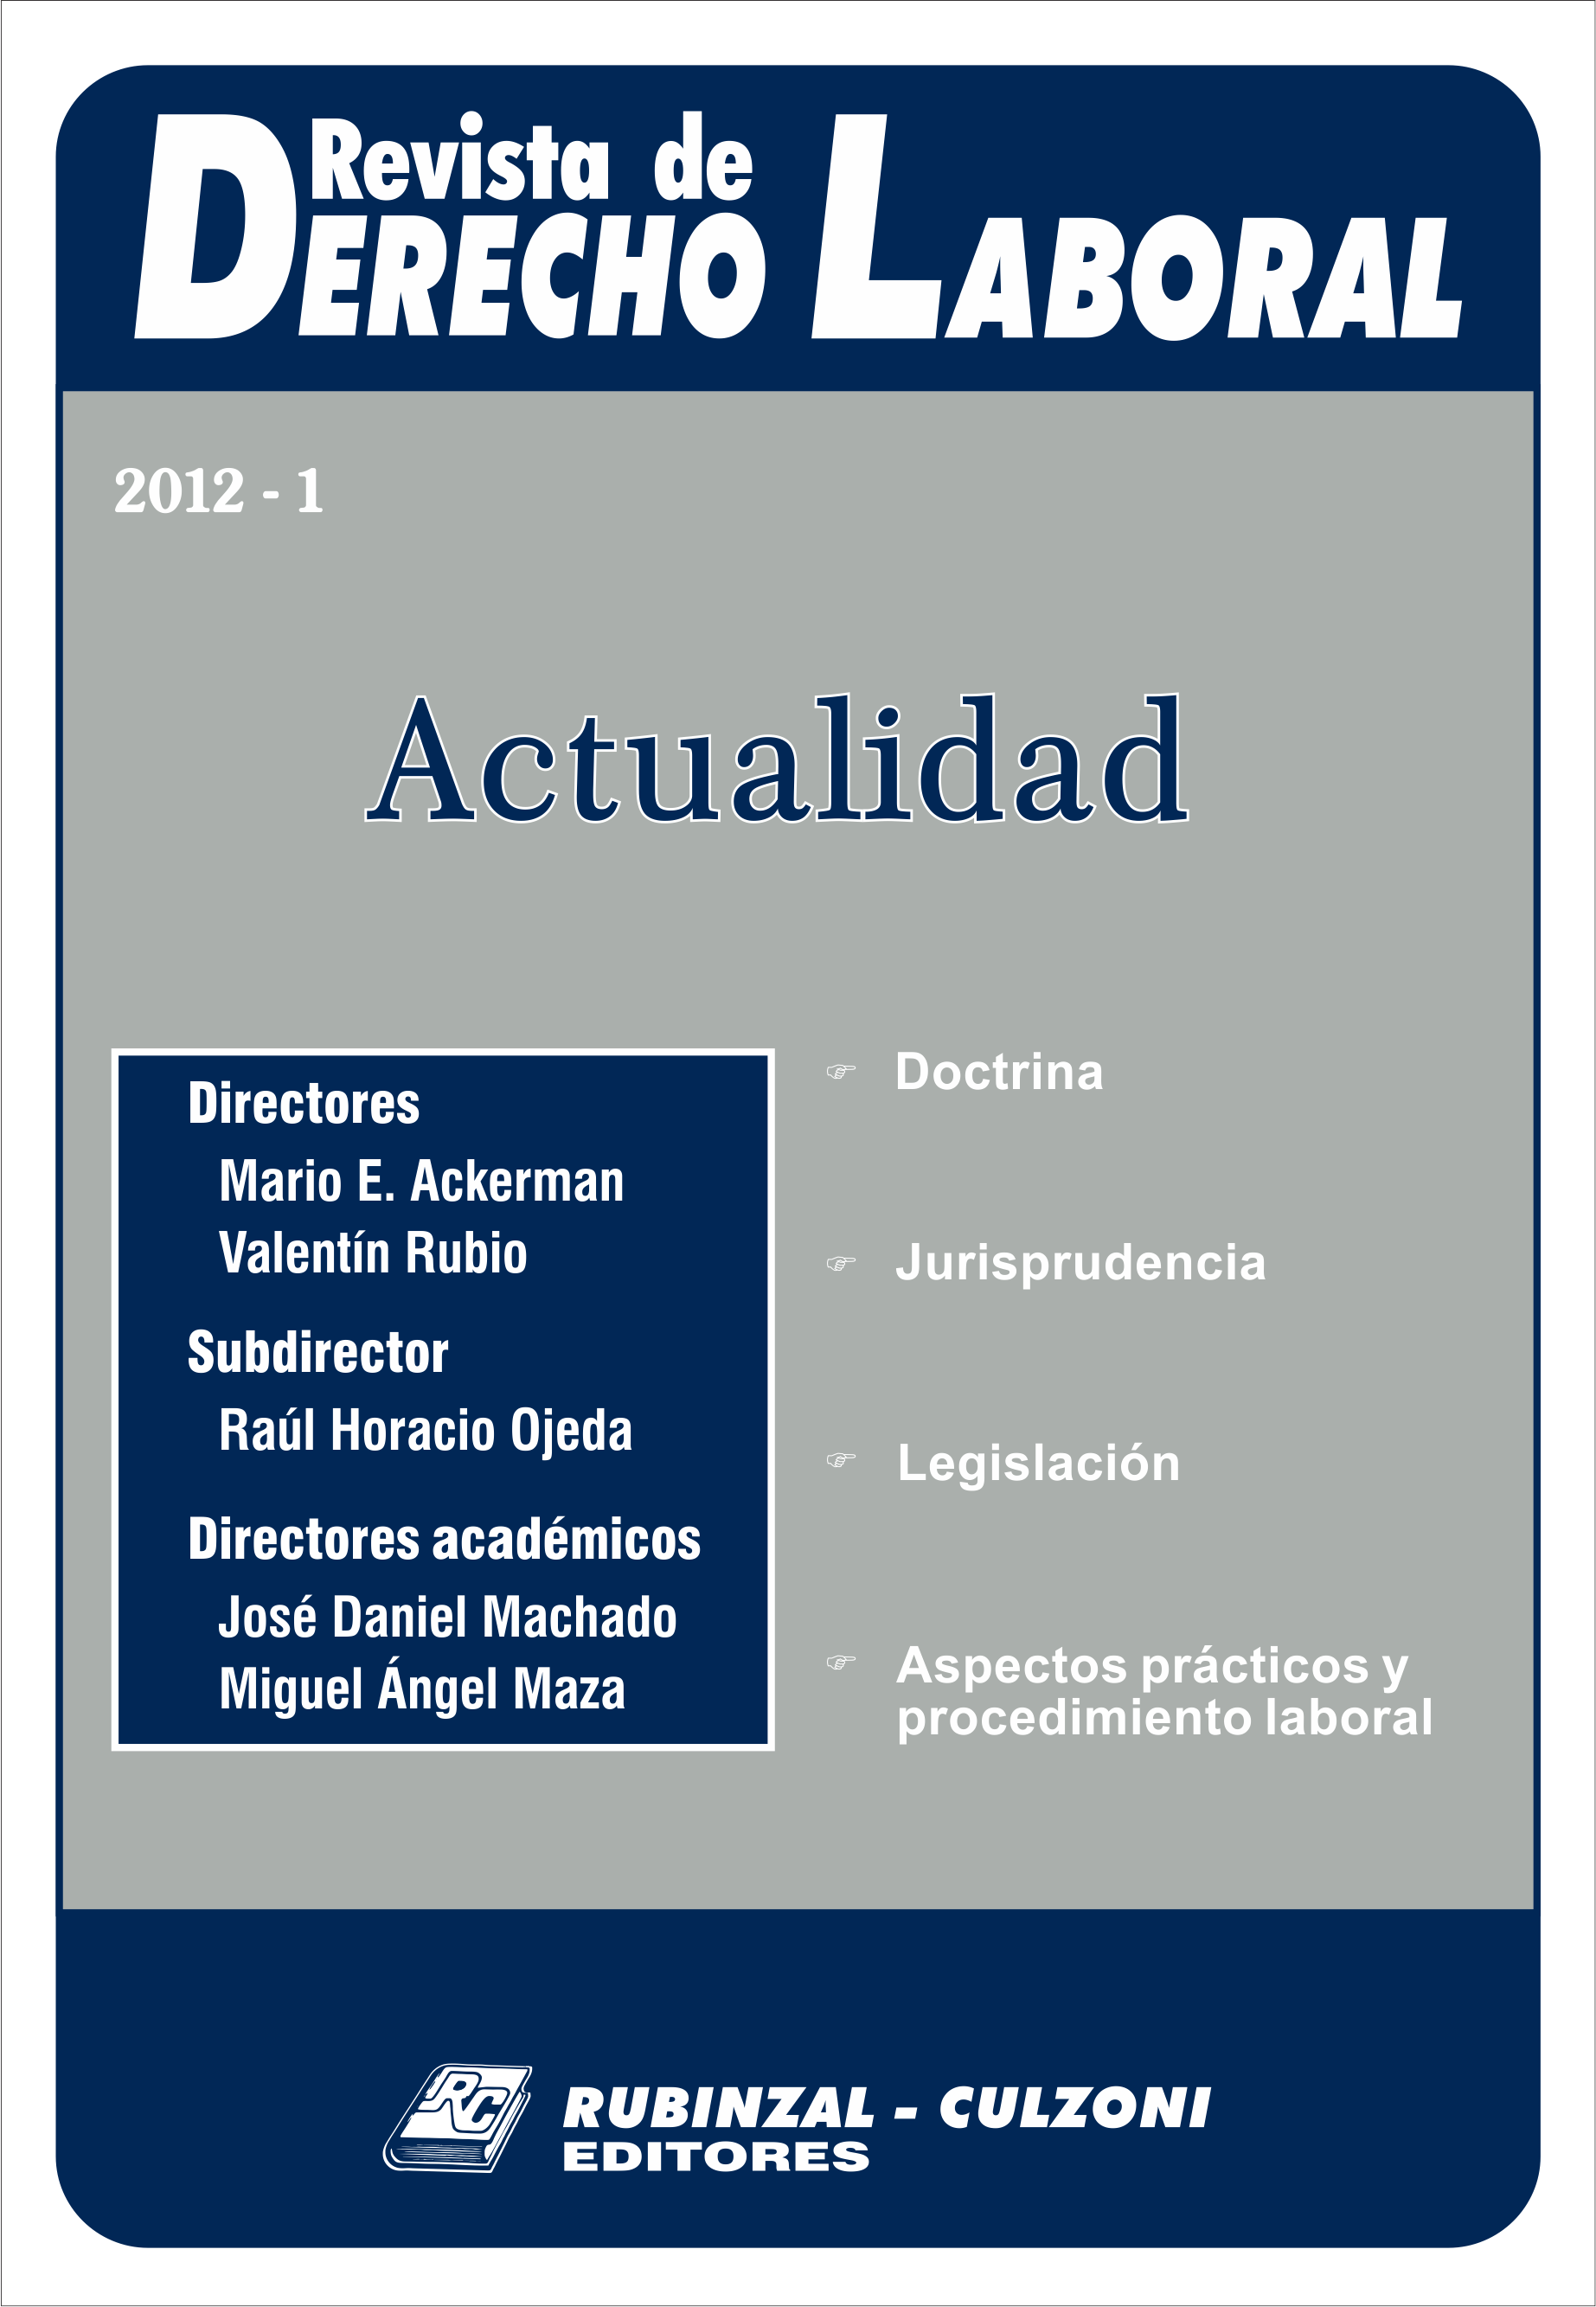 Revista de Derecho Laboral Actualidad - Año 2012 - 1.